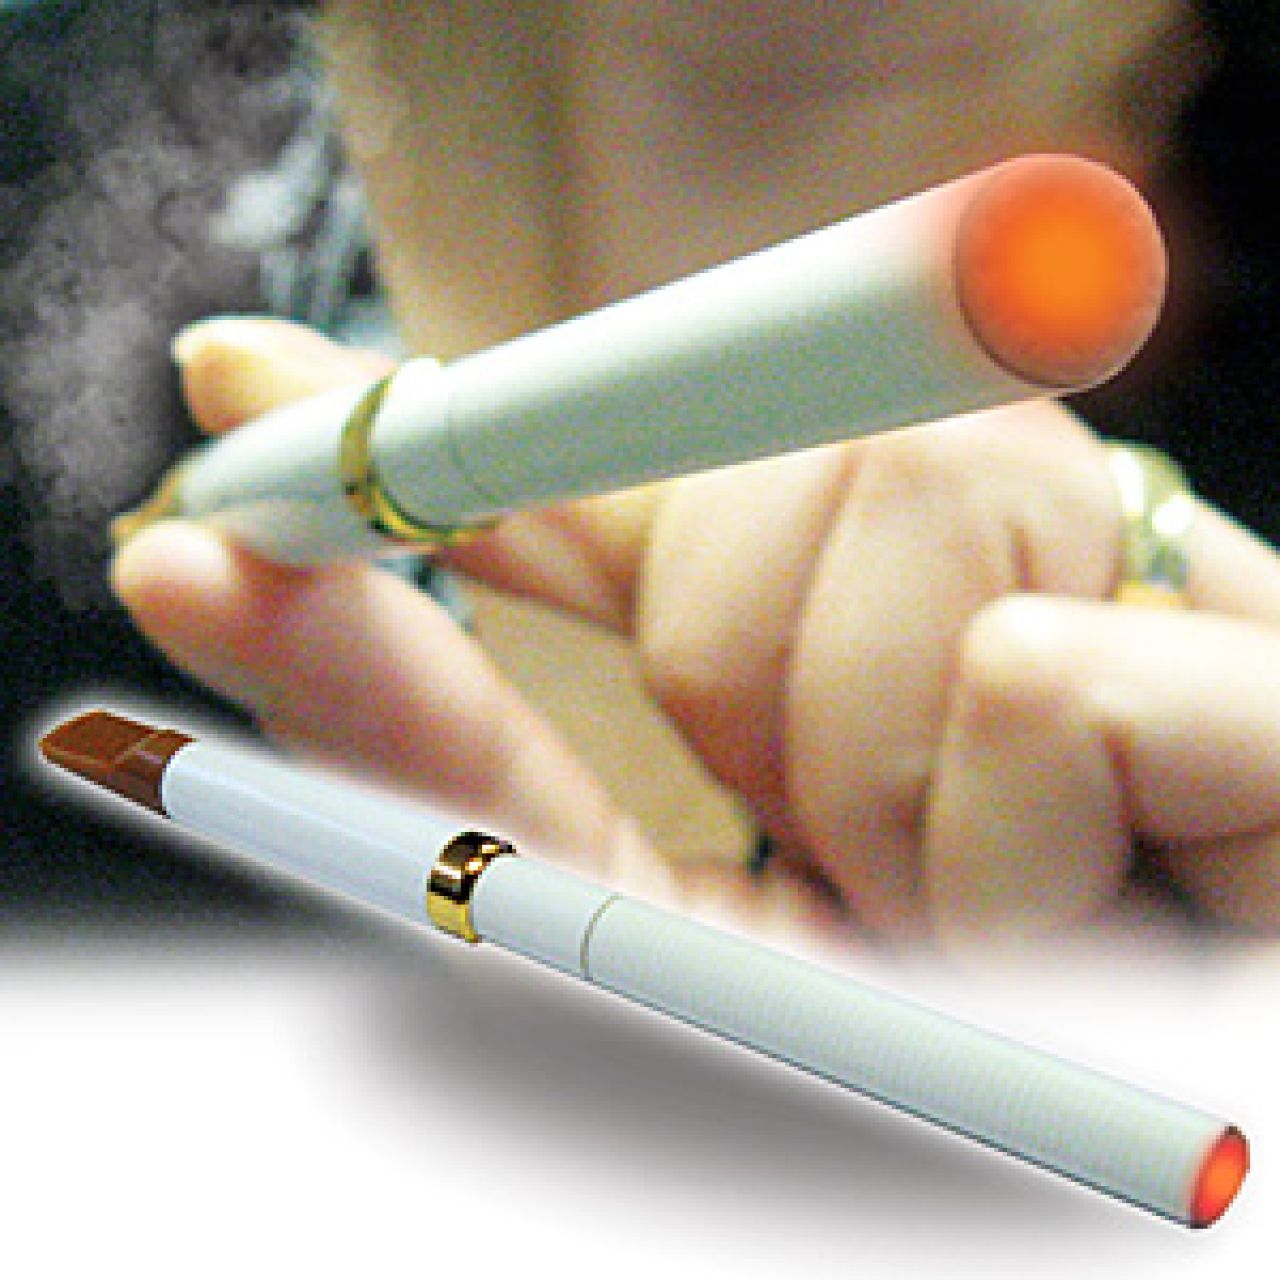 E-papieros - rewolucja w paleniu?